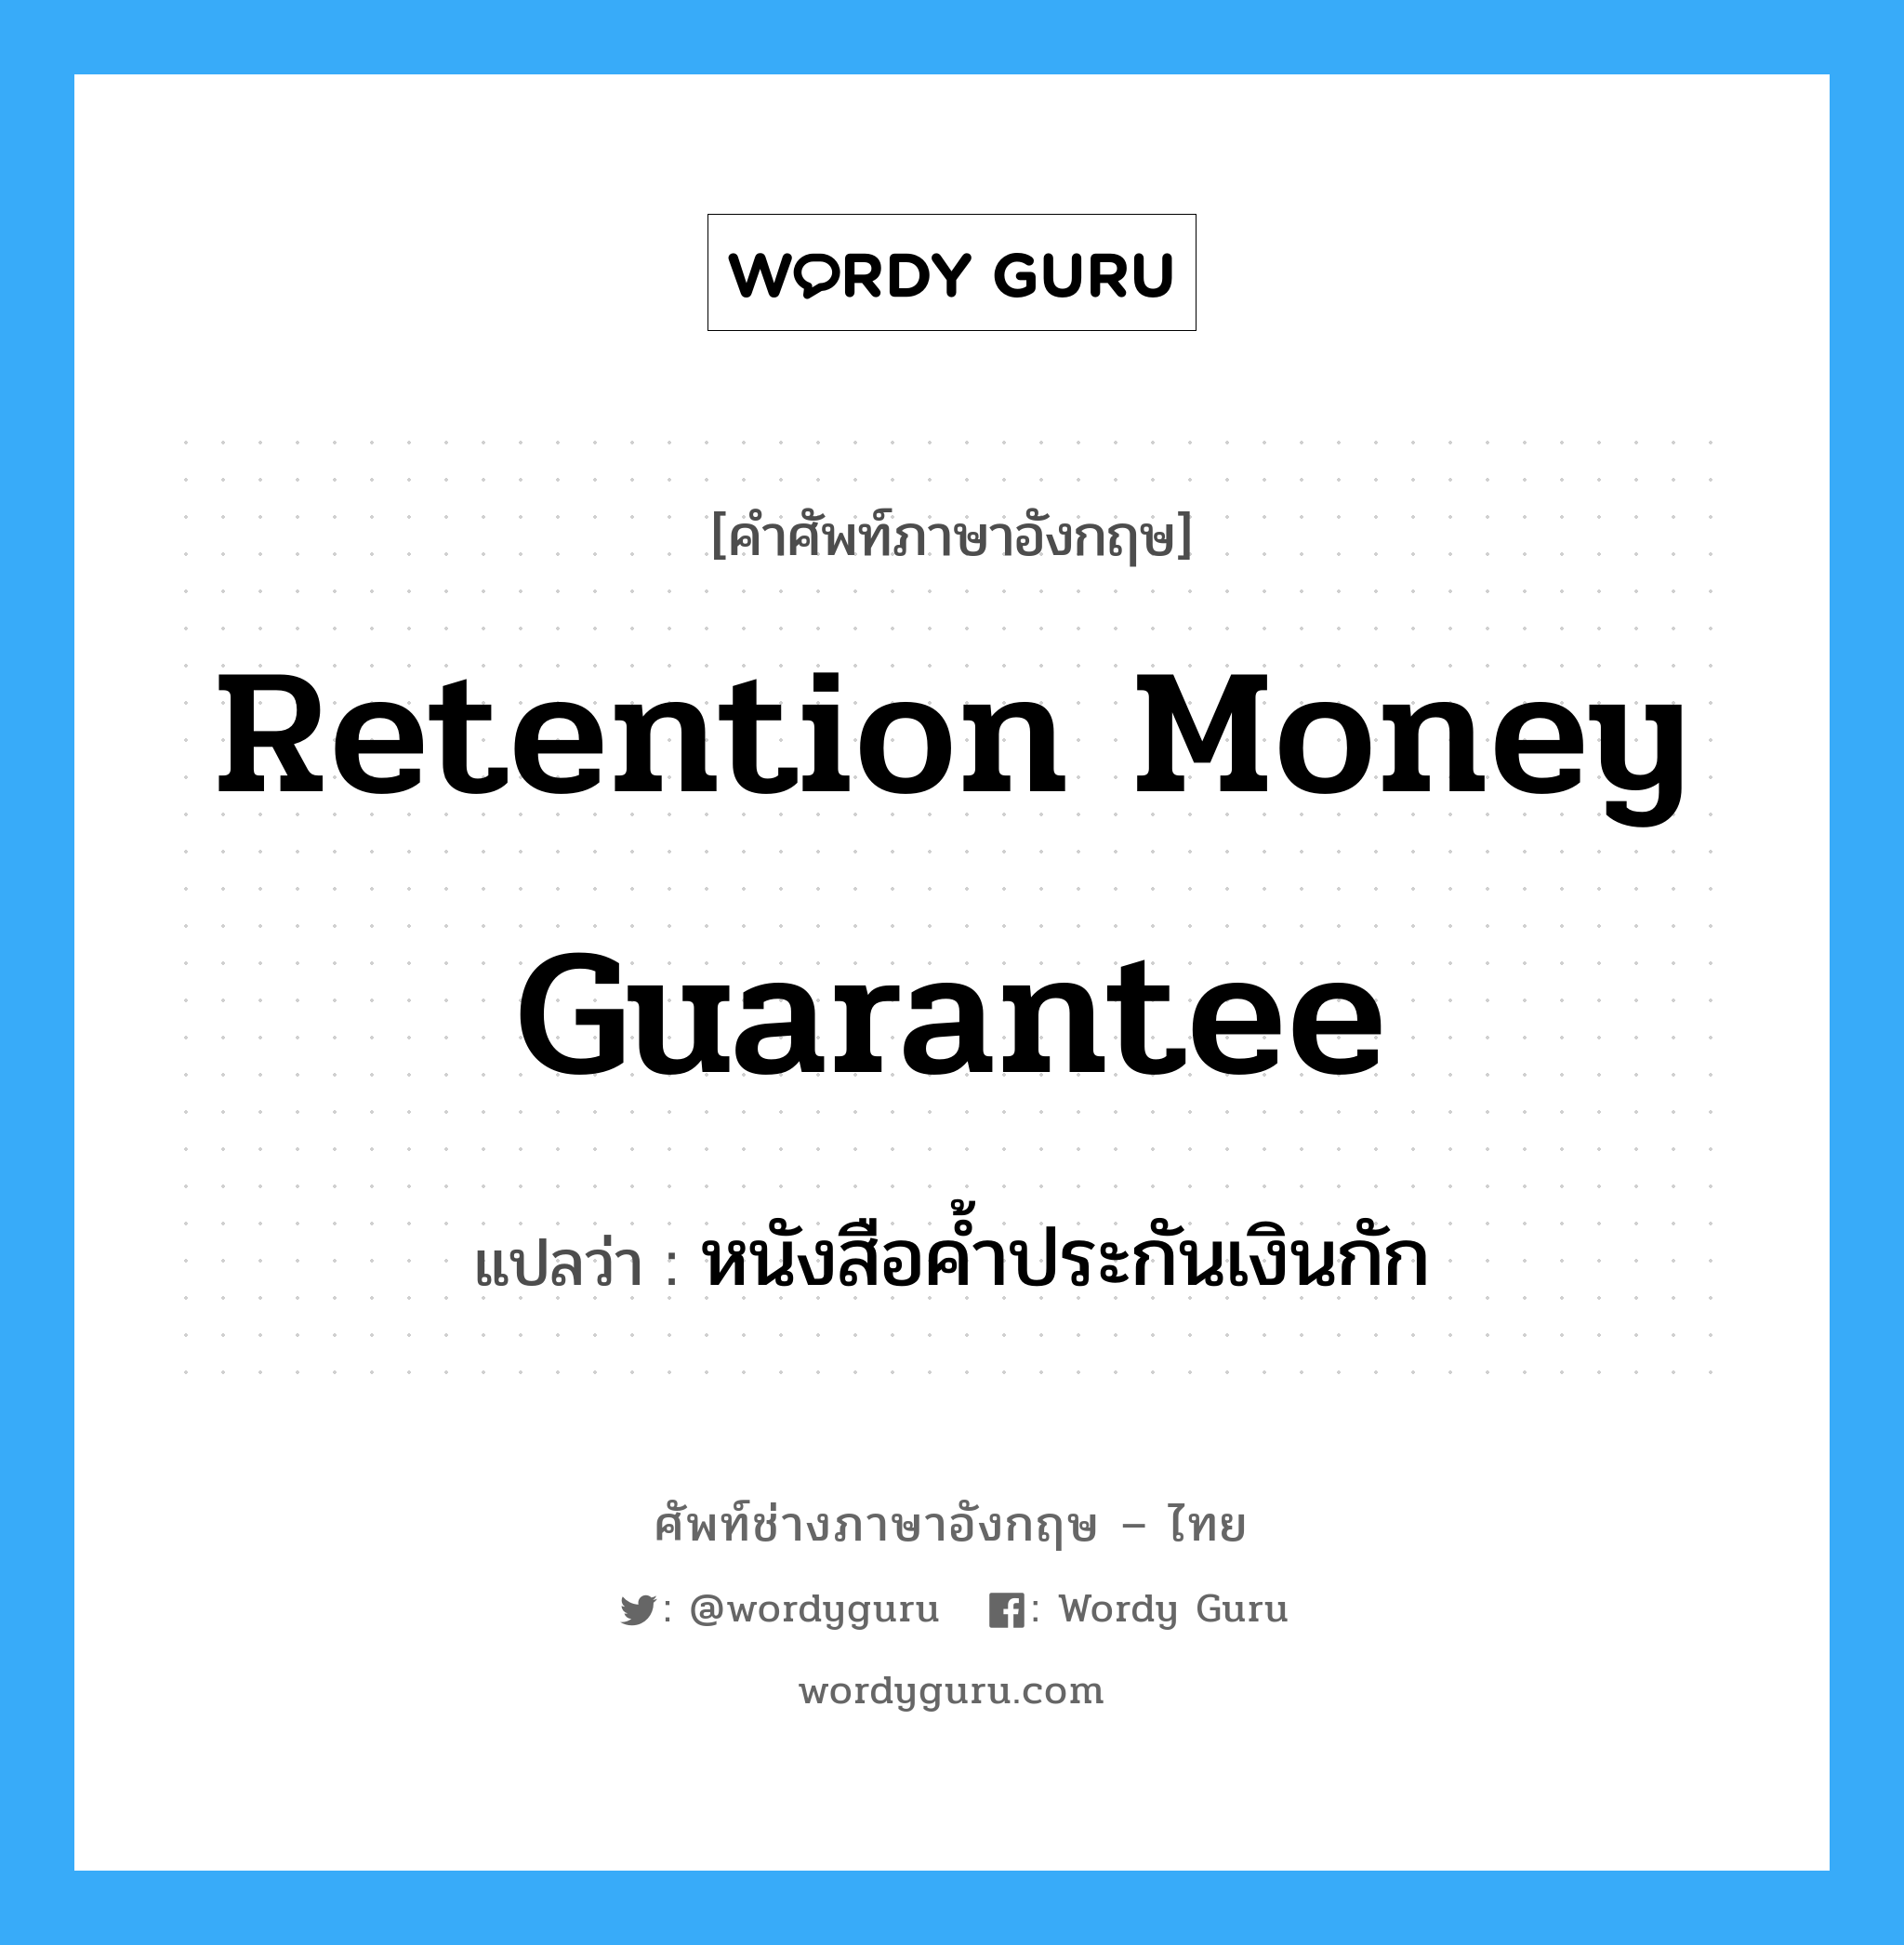 หนังสือค้ำประกันเงินกัก ภาษาอังกฤษ?, คำศัพท์ช่างภาษาอังกฤษ - ไทย หนังสือค้ำประกันเงินกัก คำศัพท์ภาษาอังกฤษ หนังสือค้ำประกันเงินกัก แปลว่า Retention Money Guarantee